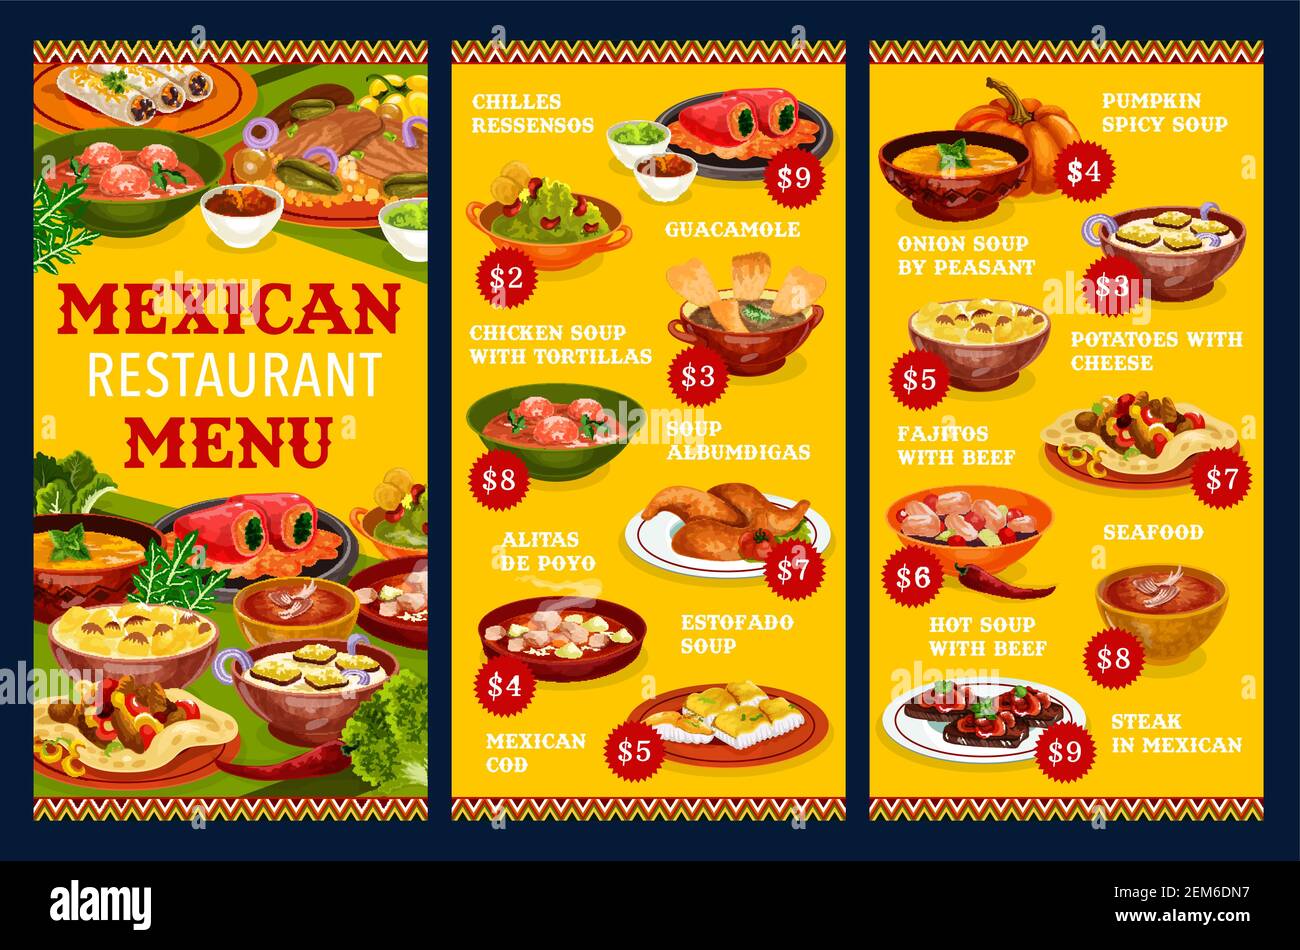 Mexikanische Restaurant-Menü Vektor-Vorlage mit Gemüse, Fleisch und Fischgerichte. Rindfleisch Fajitas, Guacamole-Sauce und gefüllte Paprika, Chicken Wings, Seafoo Stock Vektor